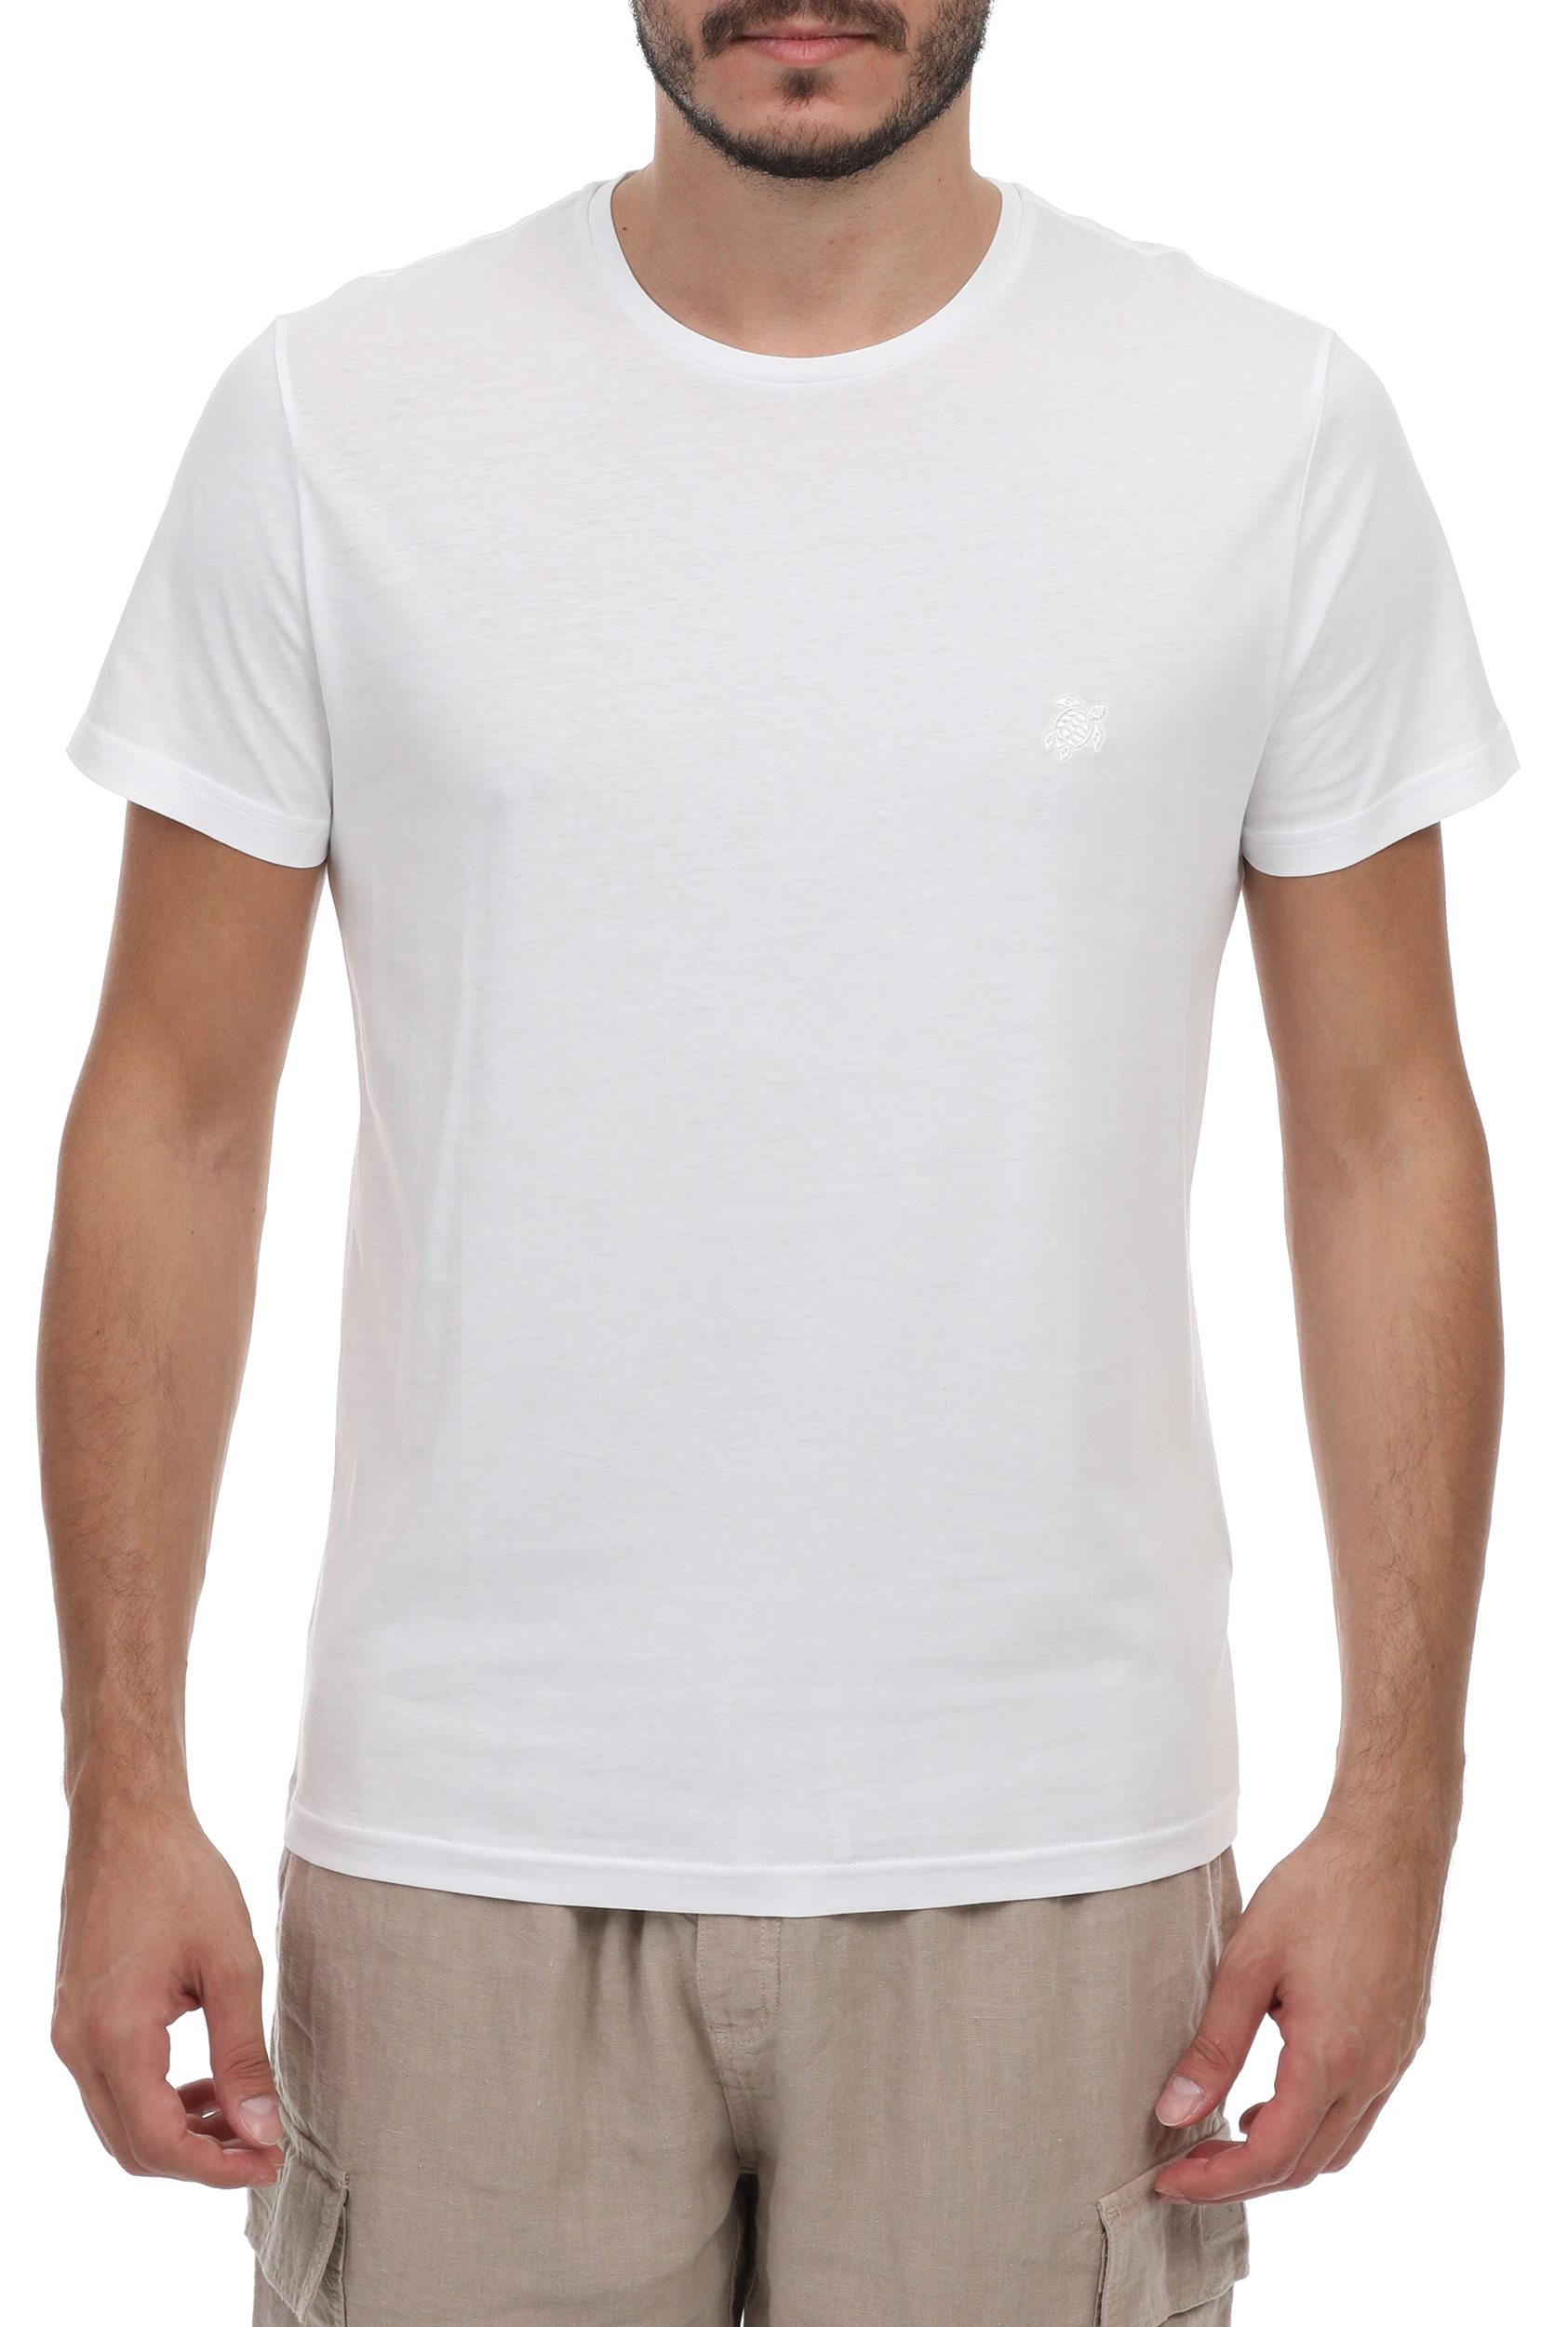 Ανδρικά/Ρούχα/Μπλούζες/Κοντομάνικες VILEBREQUIN - Ανδρική μπλούζα VILEBREQUIN STAF TS λευκή